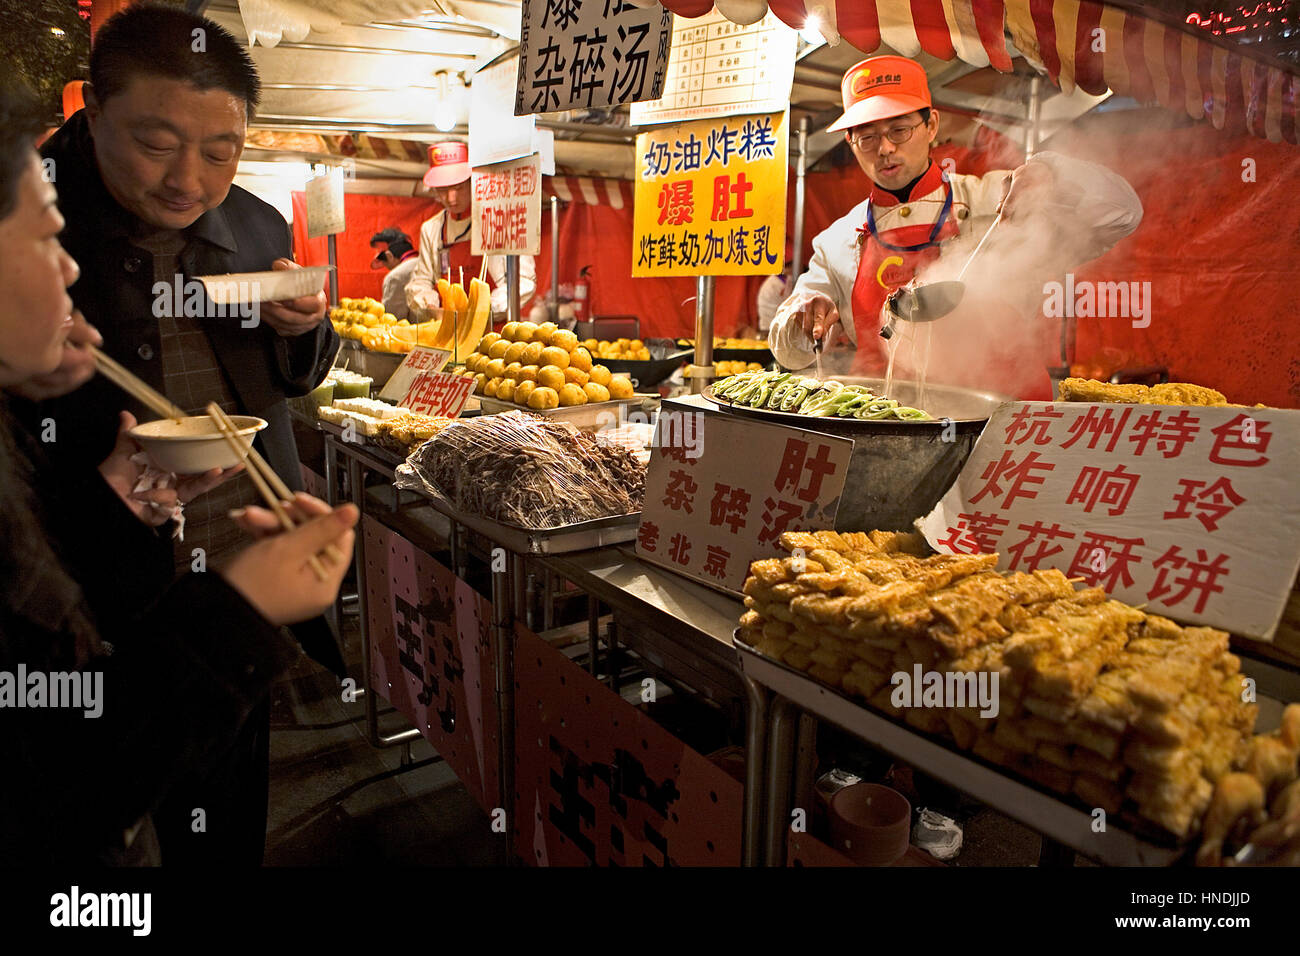 Donghuamen Night Food Market,near Wang Fu Jing Avenue shopping area,Beijing, China Stock Photo